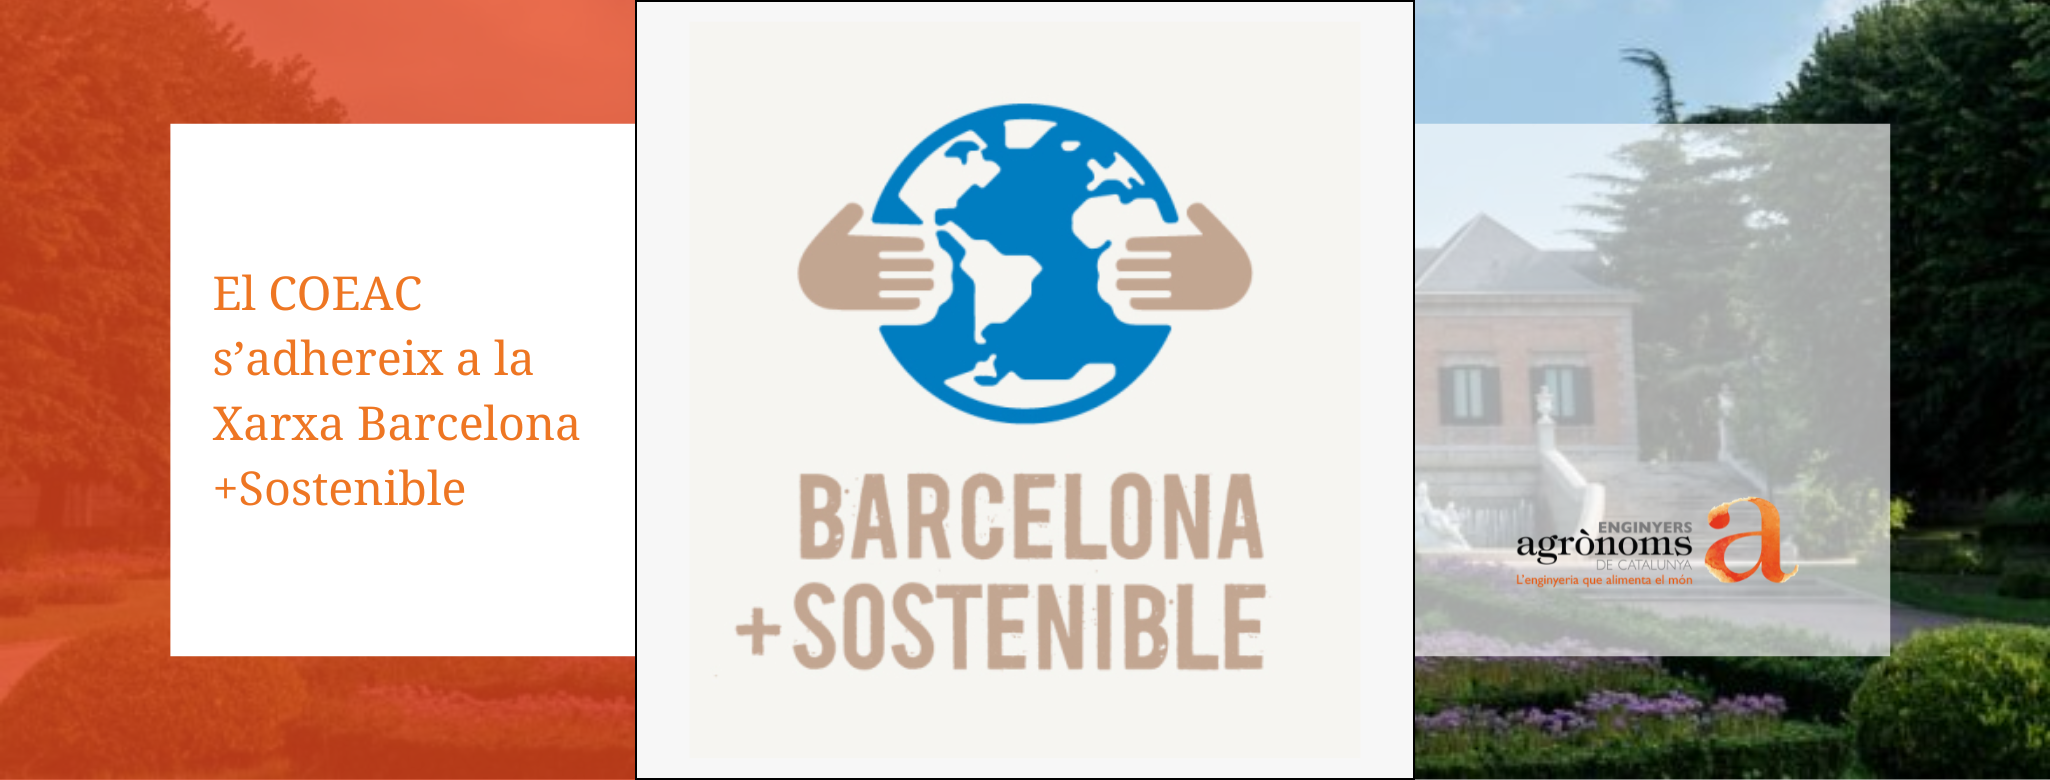 El COEAC s’adhereix a la Xarxa Barcelona + Sostenible